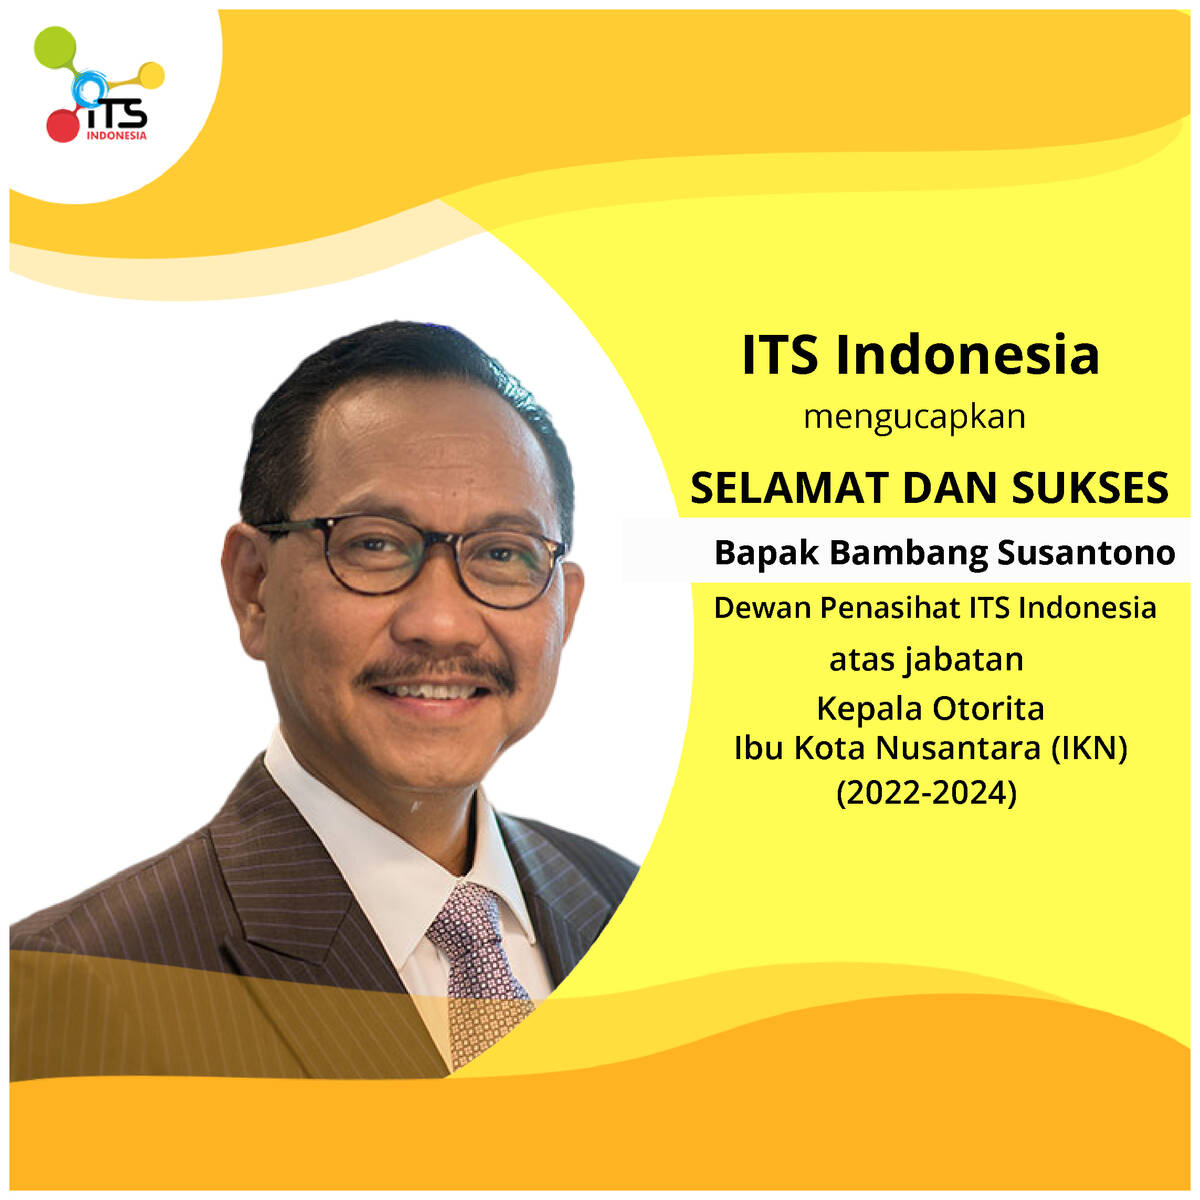 Dewan Penasihat ITS Indonesia Terpilih Sebagai Kepala Otorita Ibu Kota Nusantara (IKN)